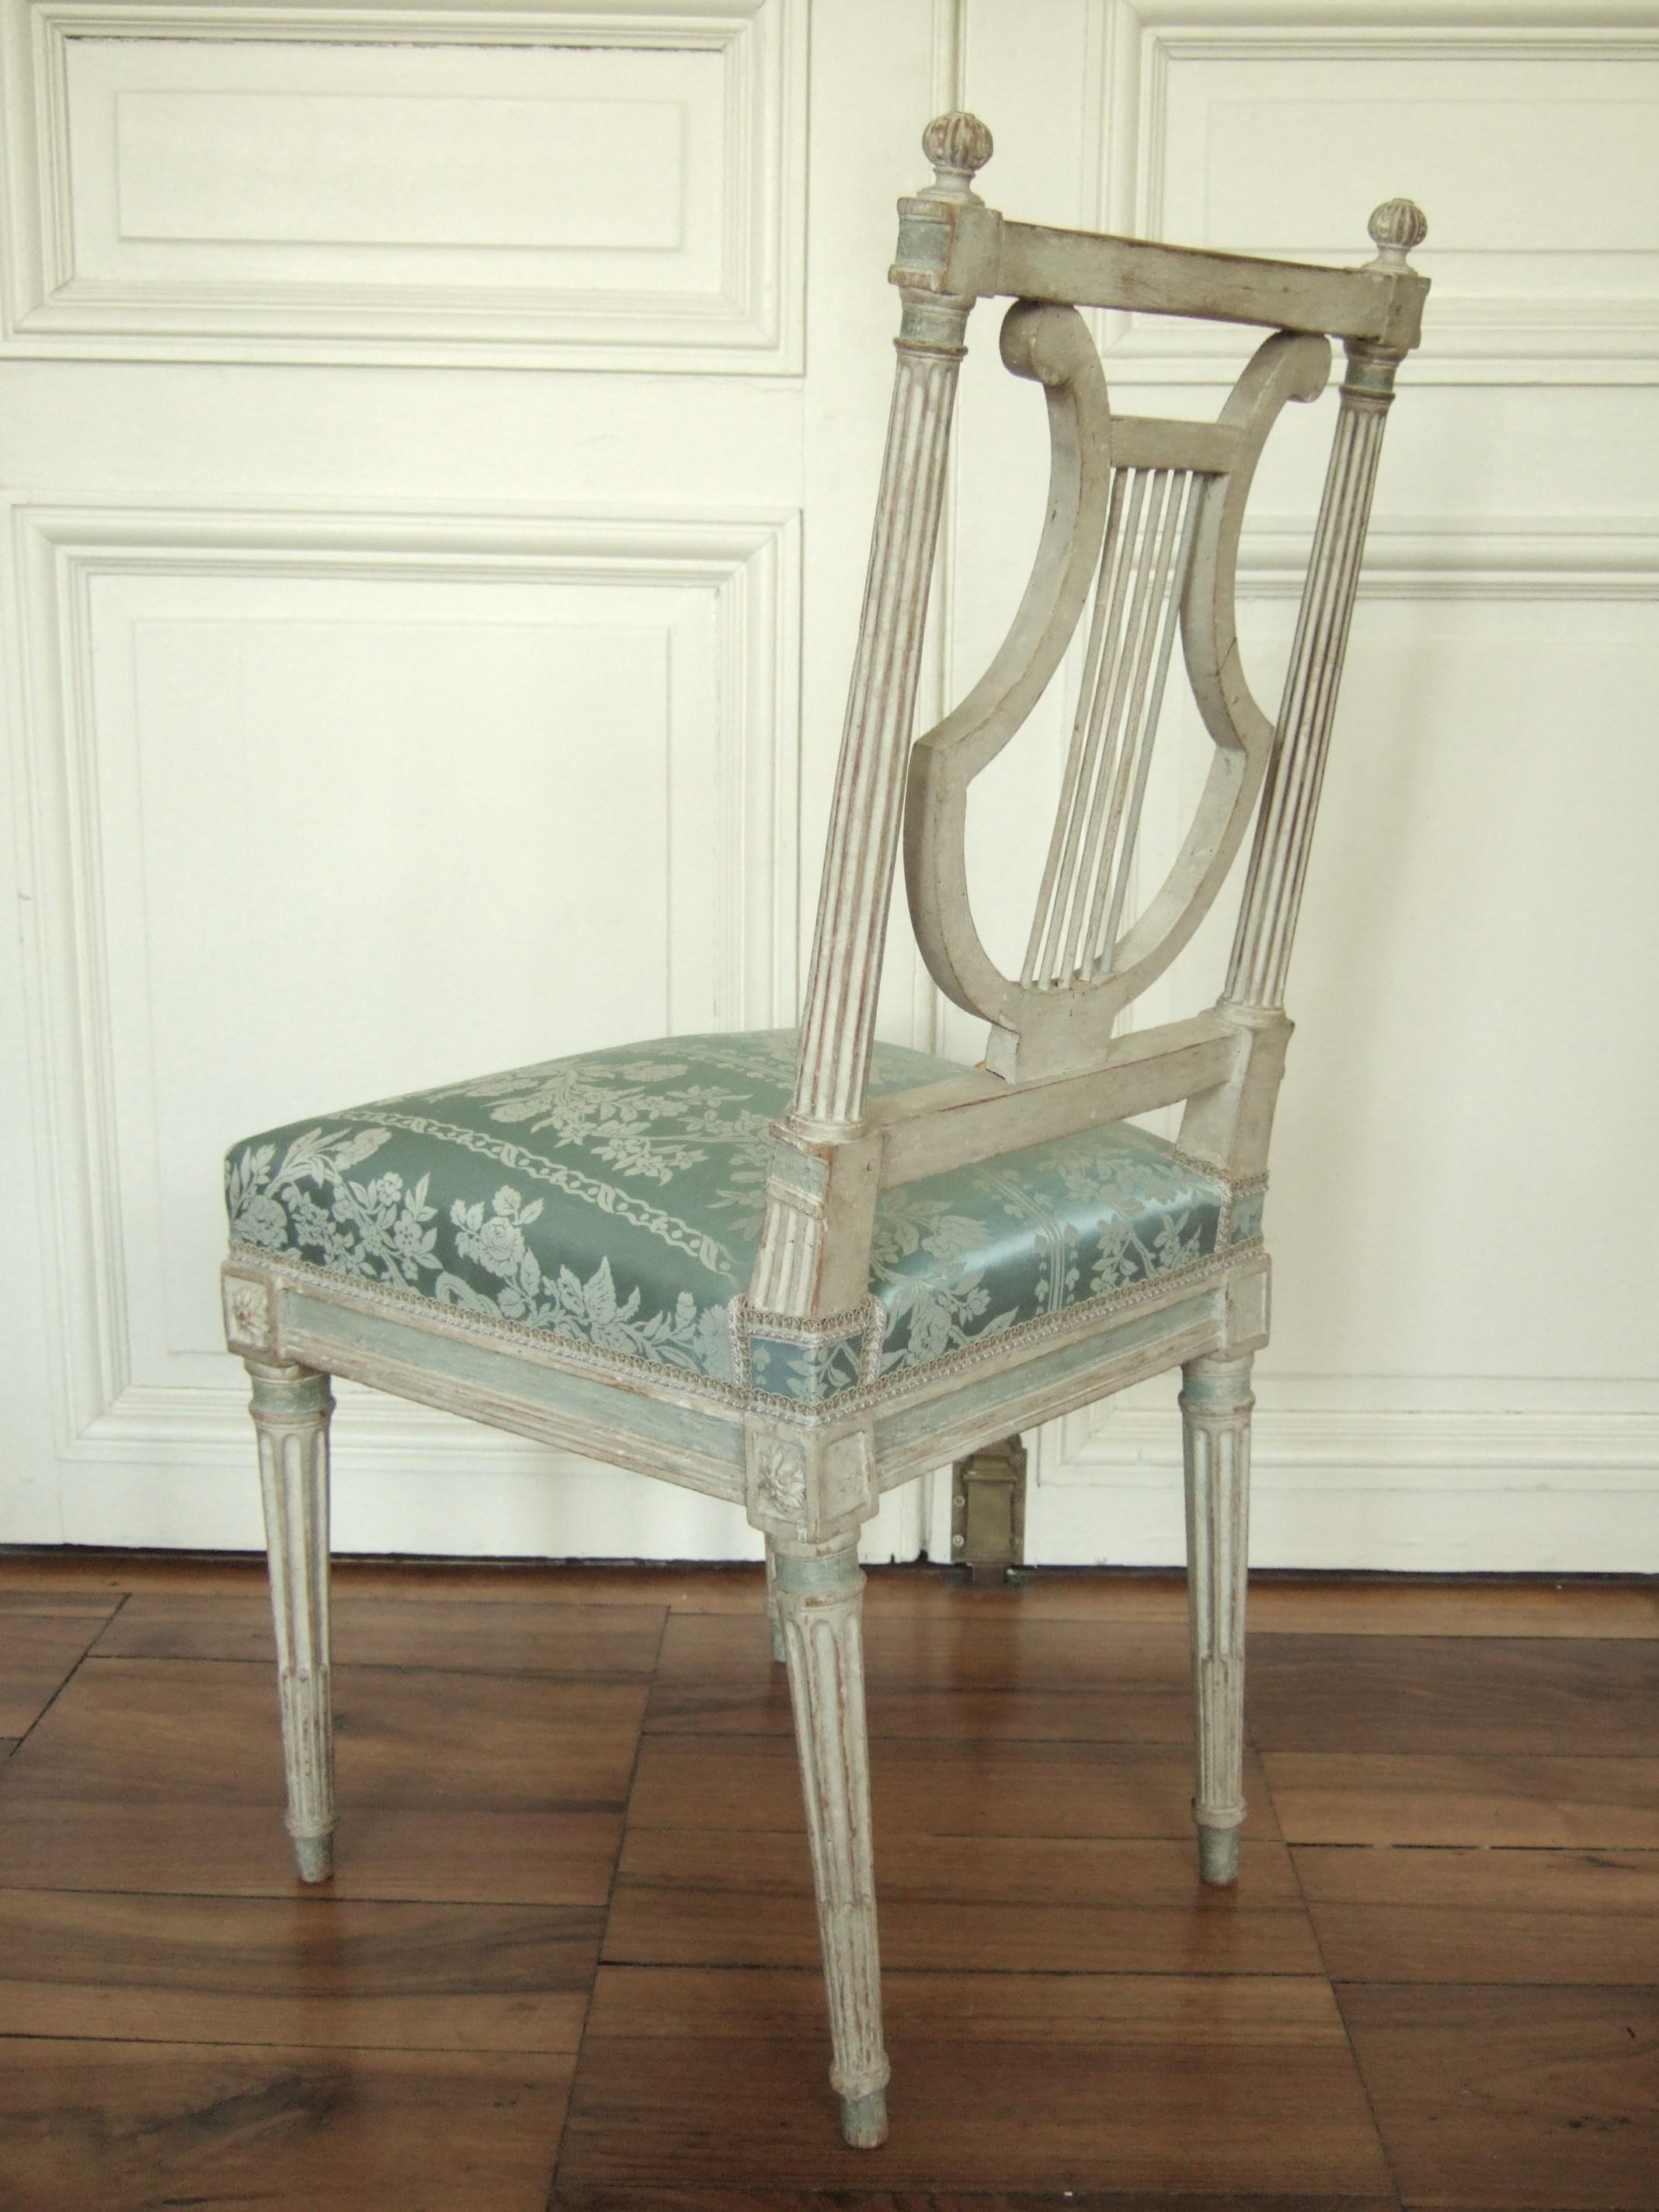 Exceptionnelle série de chaises lyre Louis XVI en bois laqué, modèle prisé et symbole de raffinement au XVIIIe siècle. Bien que ces chaises ne soient pas estampillées, leurs détails rappellent fortement une production de Jacob : une sculpture